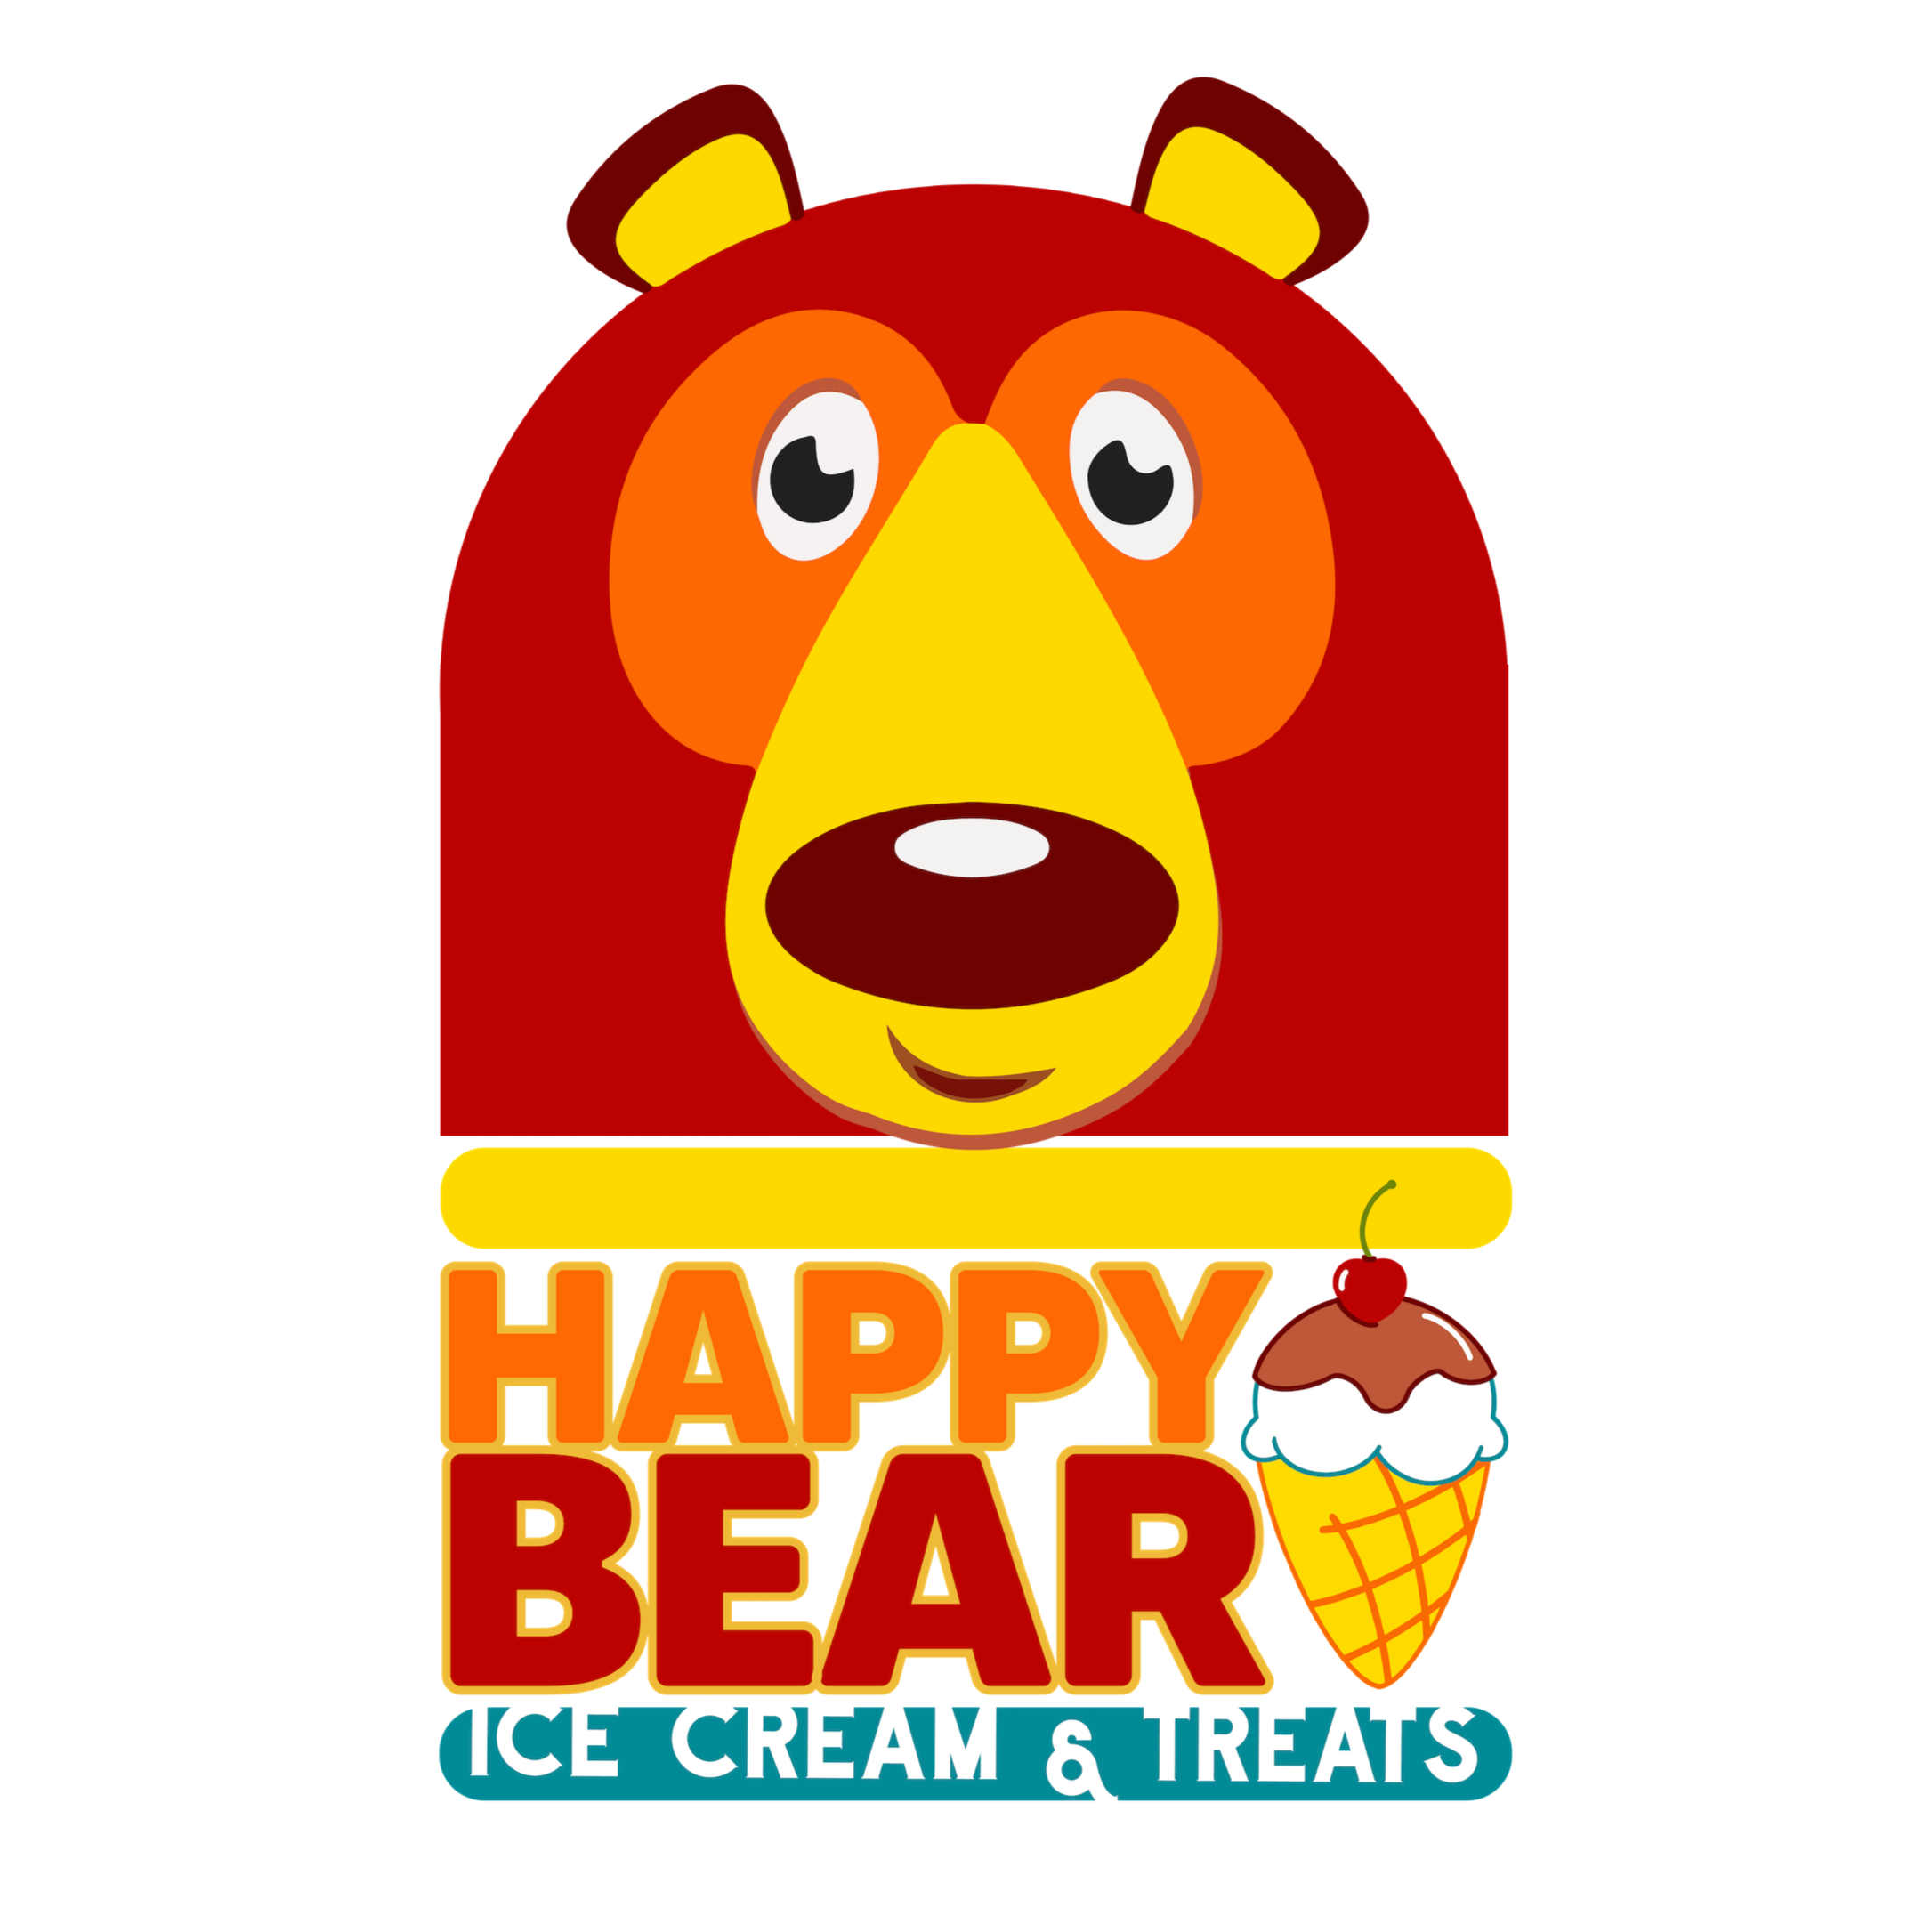 Happy Bear Ice Cream & Treats